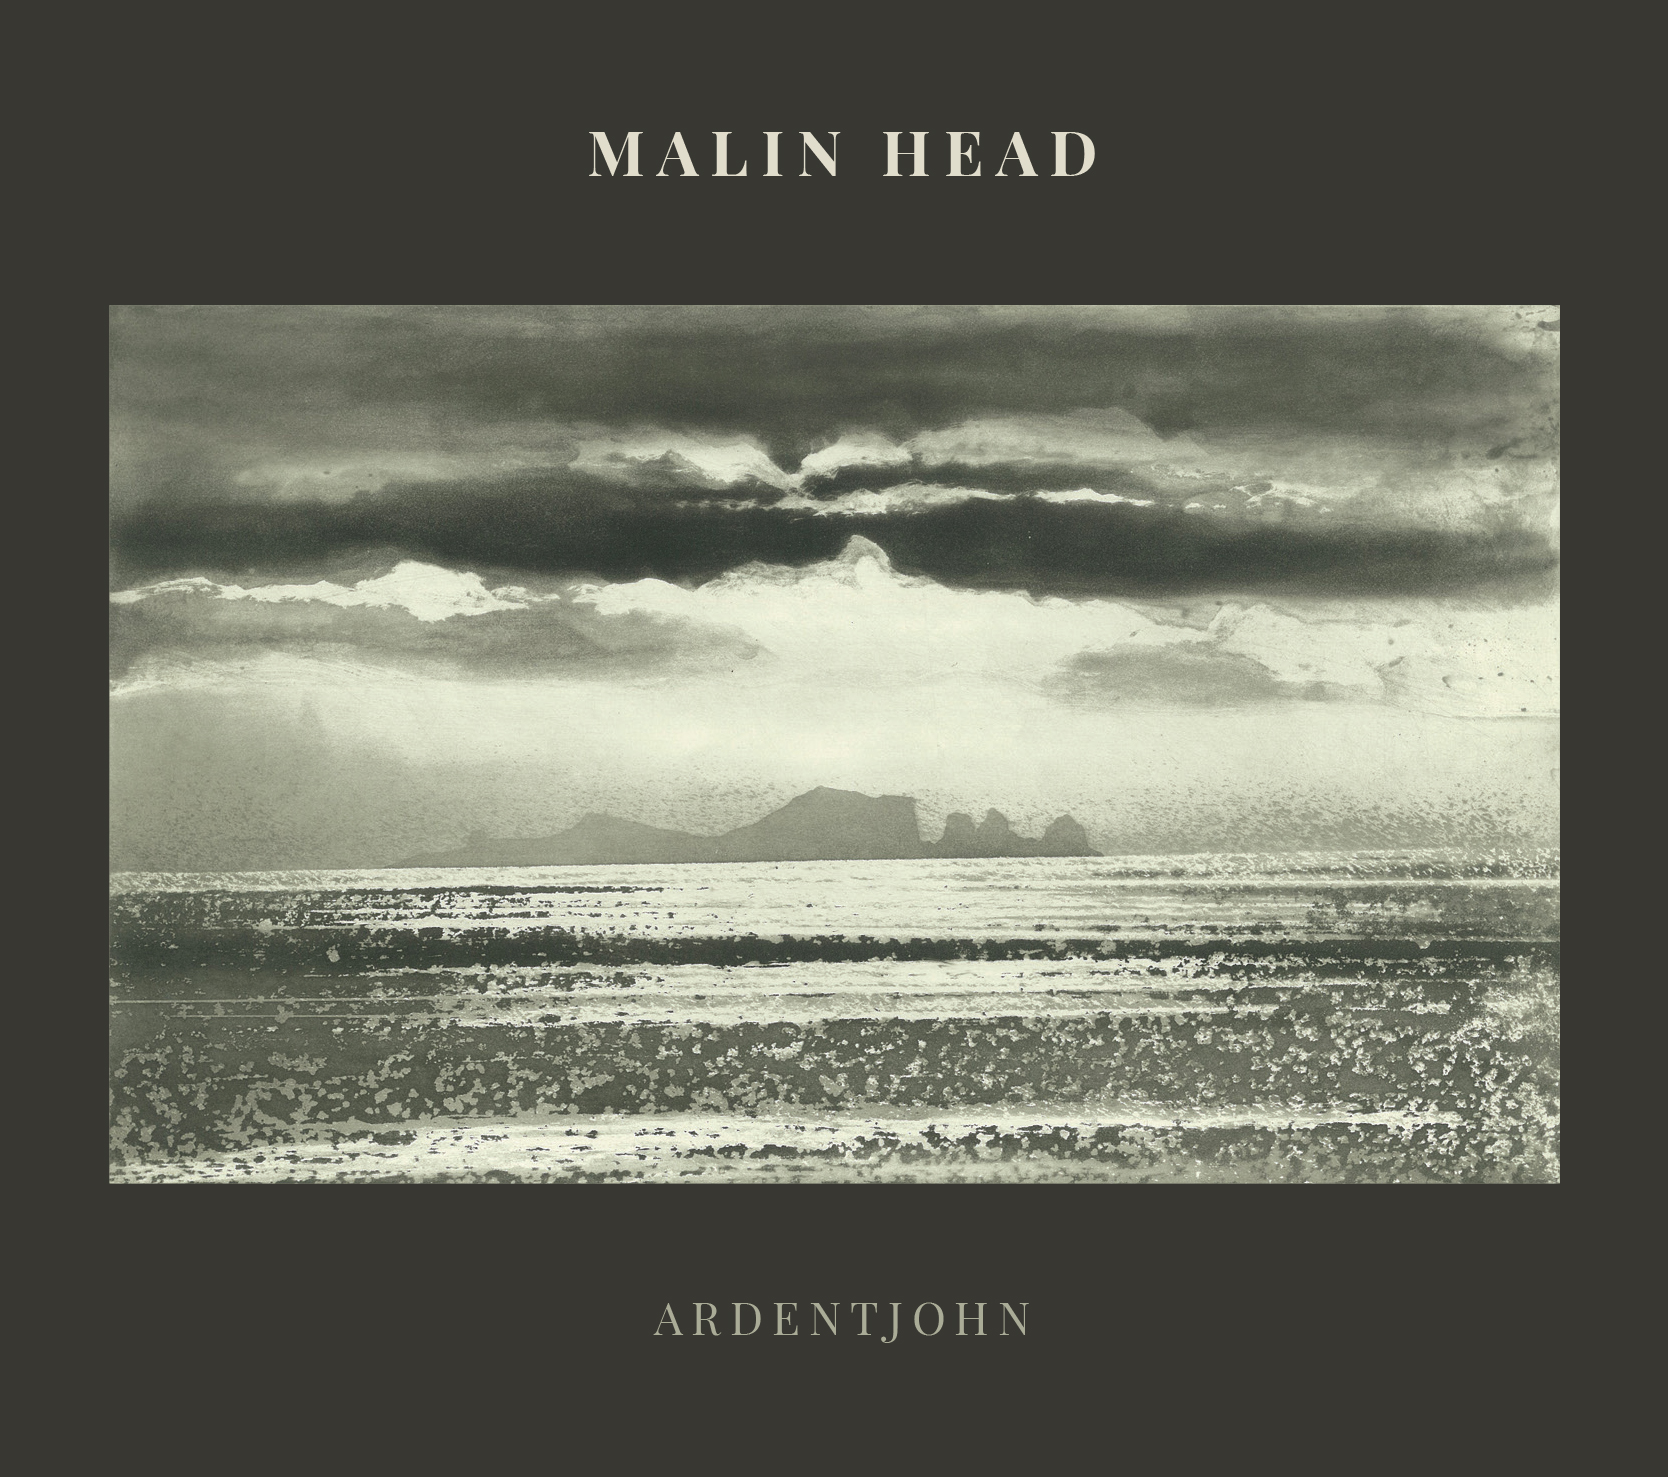 Album cover artwork for Malin Head by Ardentjohn